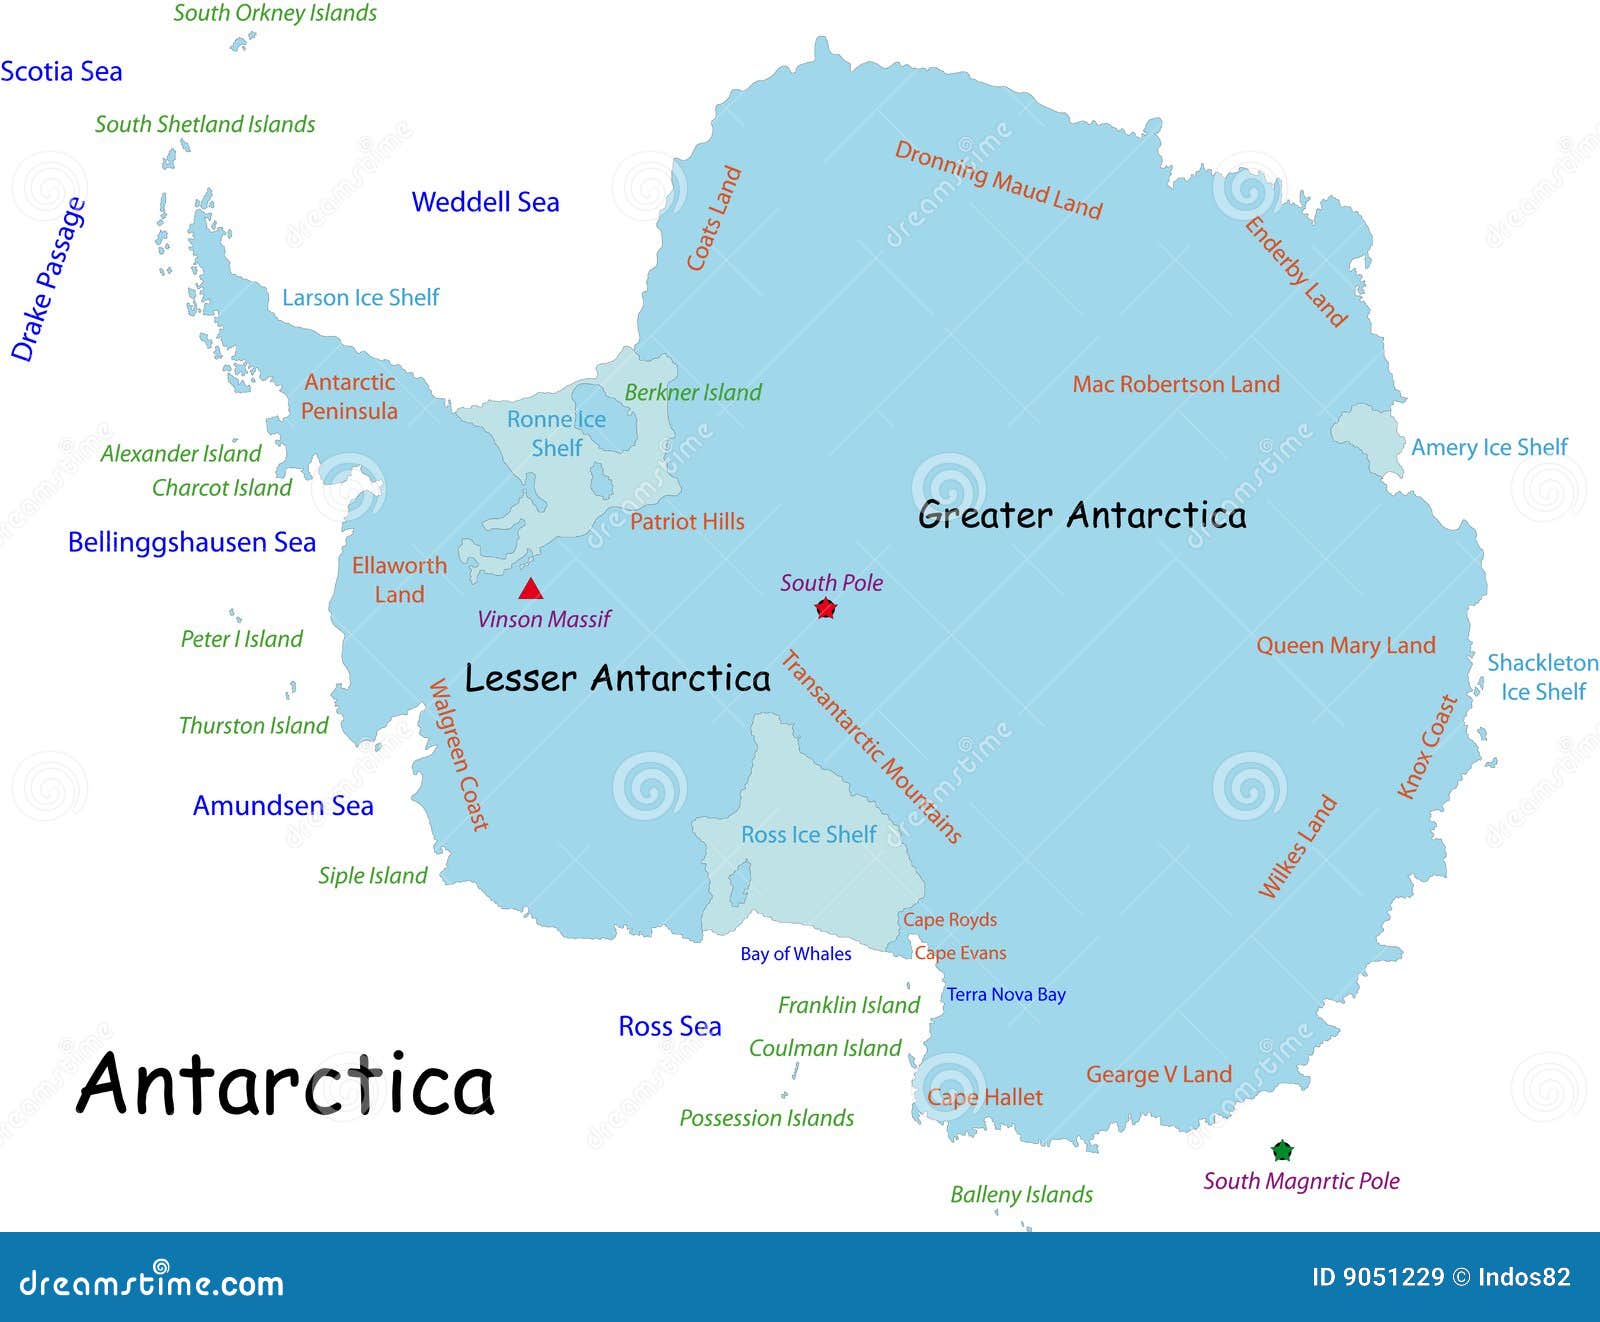 cape evans antarctica map Antarctica Map Stock Vector Illustration Of Green Earth 9051229 cape evans antarctica map